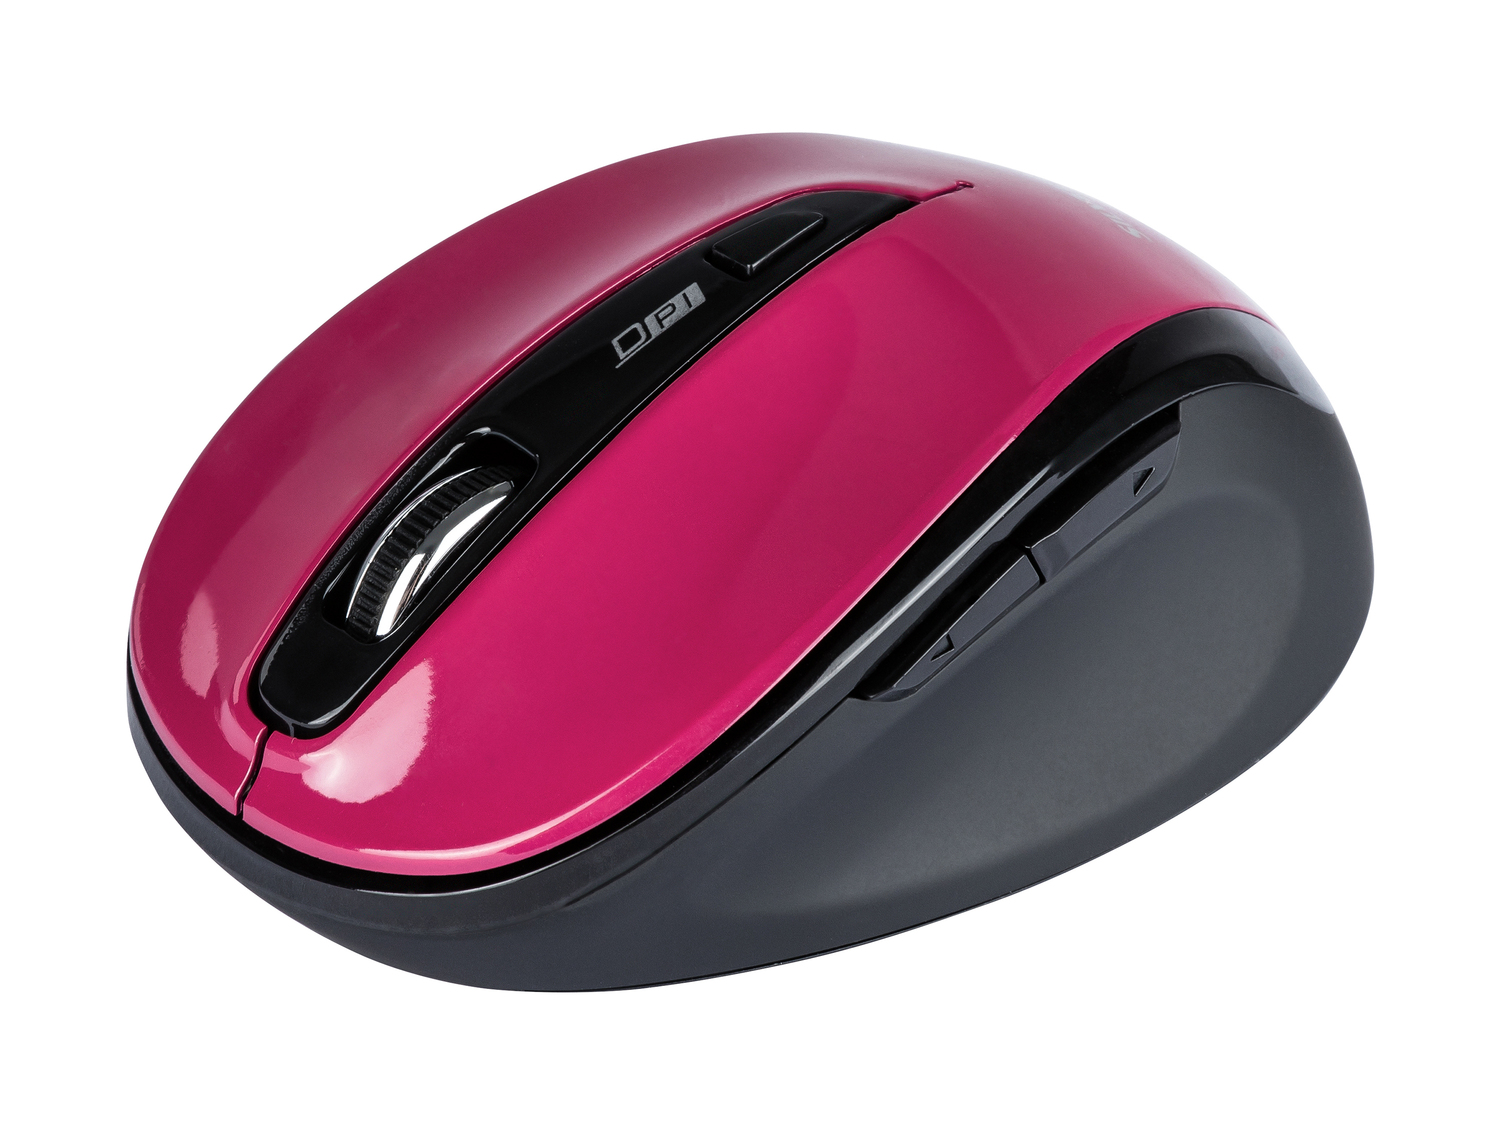 Mouse ottico senza fili Silvercrest, prezzo 7.99 € 
- Raggio d‘azione fino ...